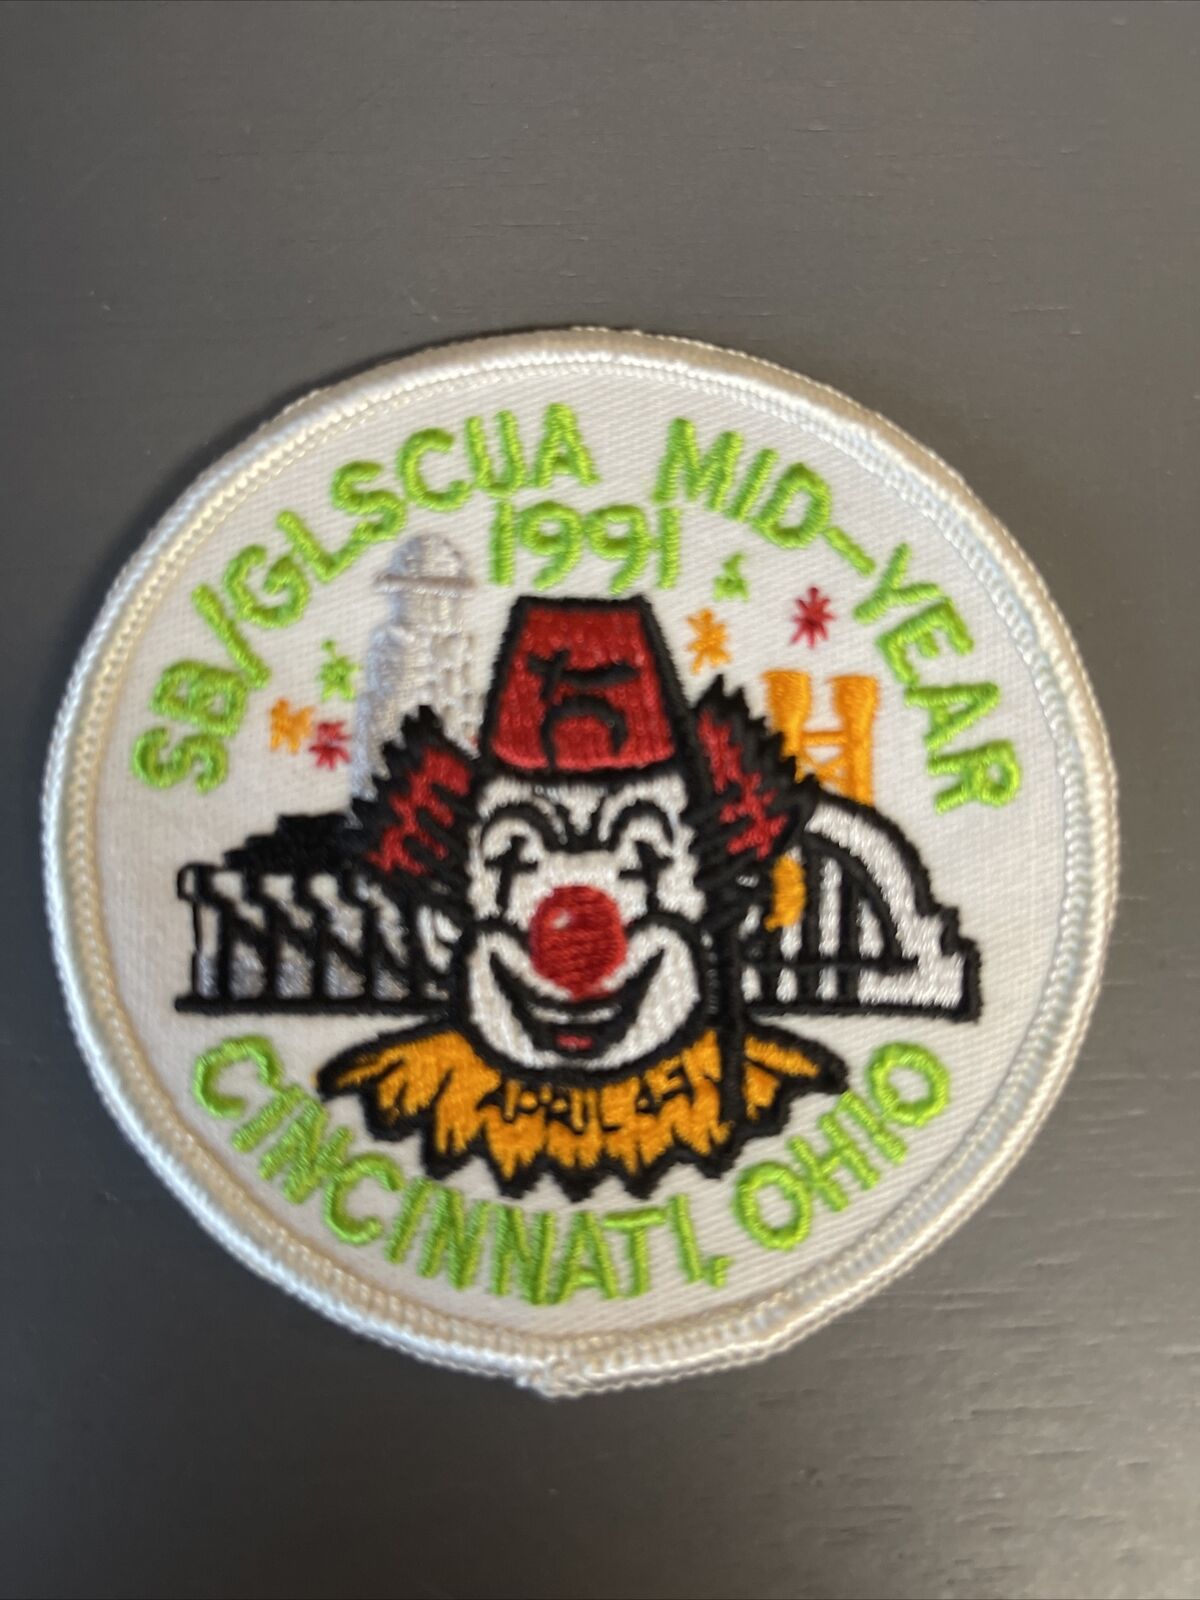 Glscua  Shrine  1991 Clown Mid-year Convention Patch Cincinnati New!